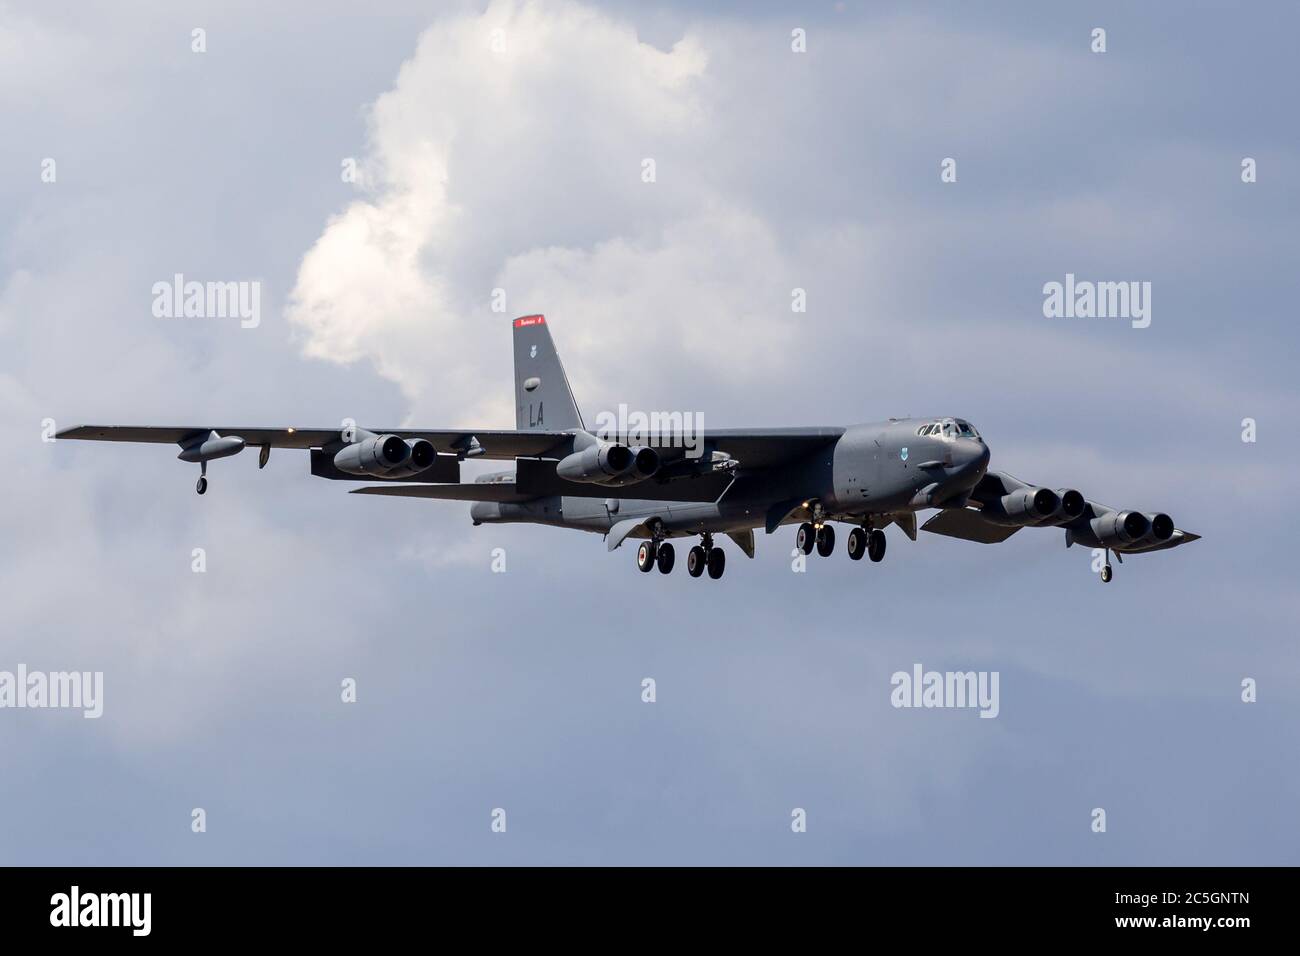 US Air Force (USAF) Boeing B-52H bombardier stratégique Stratofortress (61-0015) de la base aérienne de Barksdale sur l'approche de la terre à AV Banque D'Images